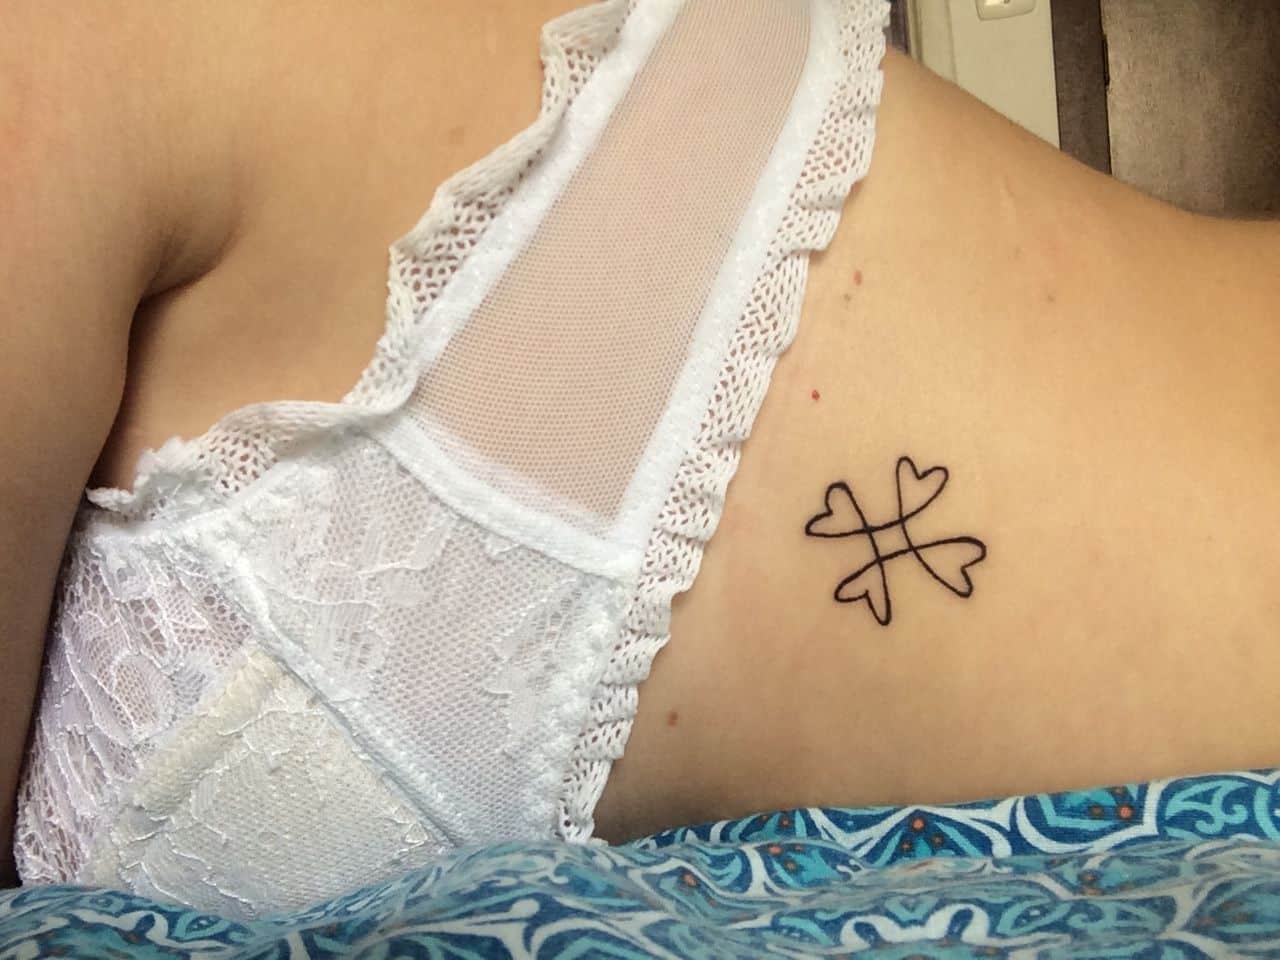 Tatuagem feminina na costela